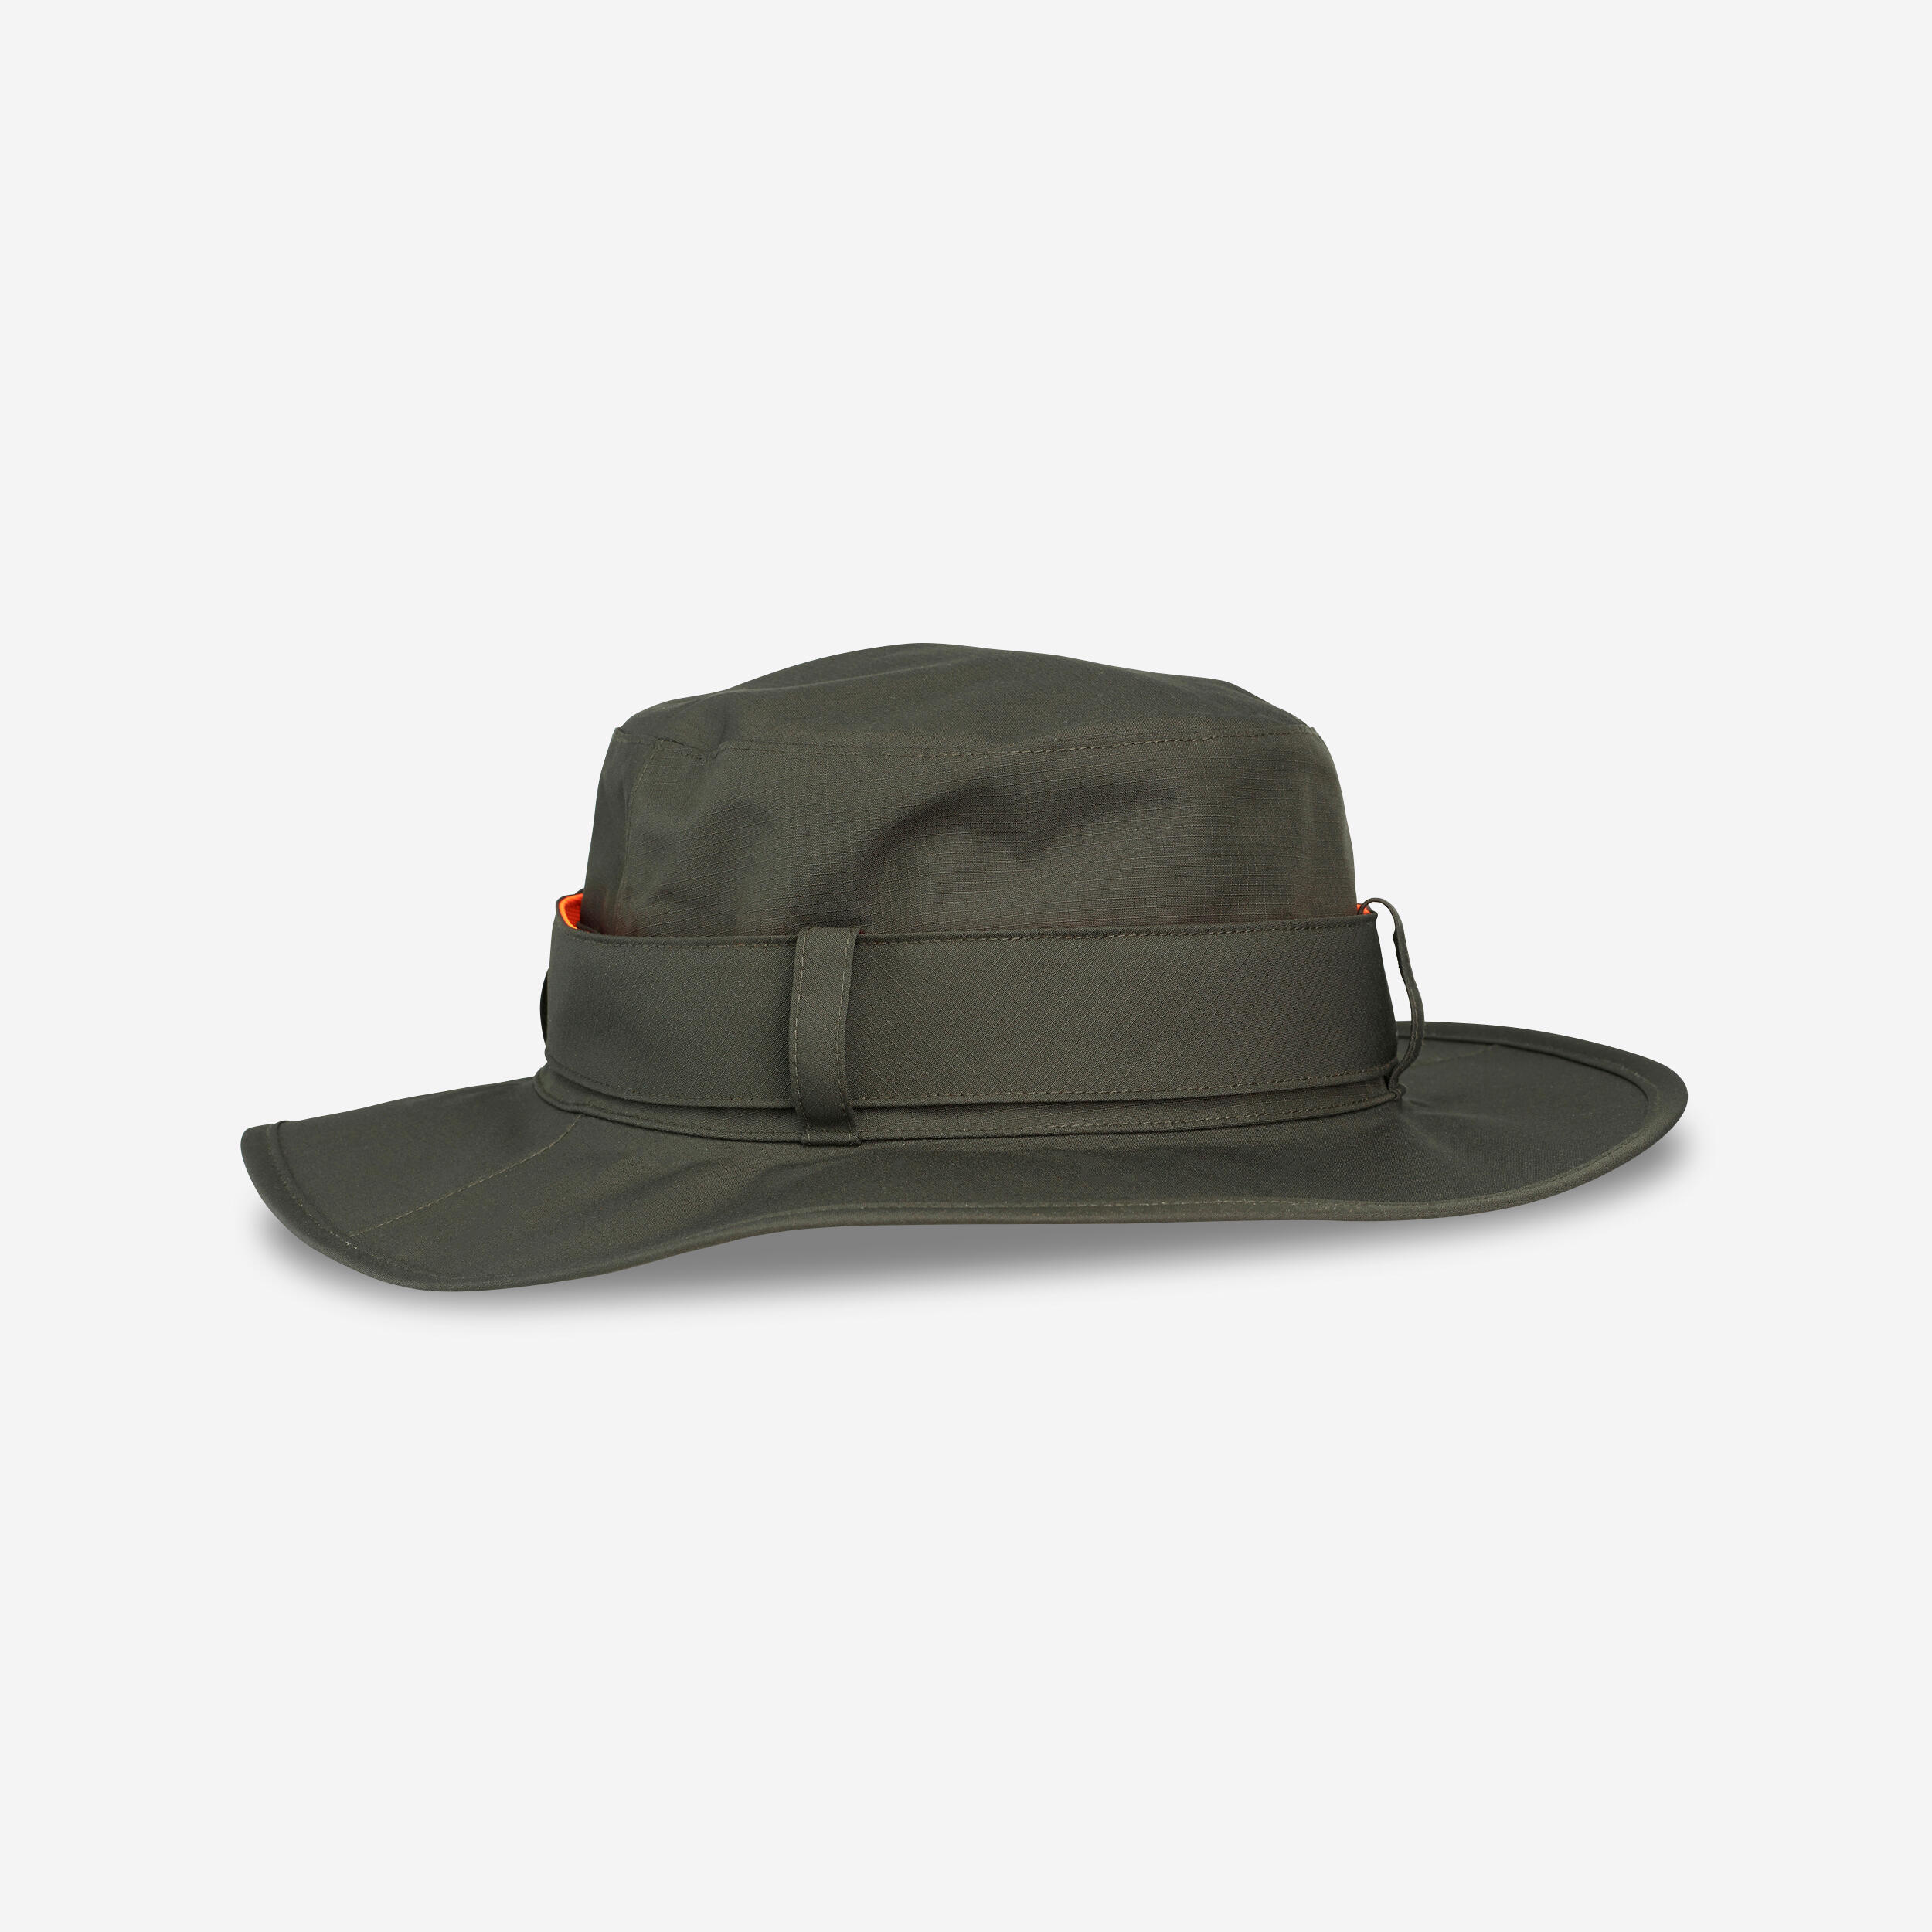 Pălărie SG520 impermeabilă și rezistentă verde bărbați decathlon.ro